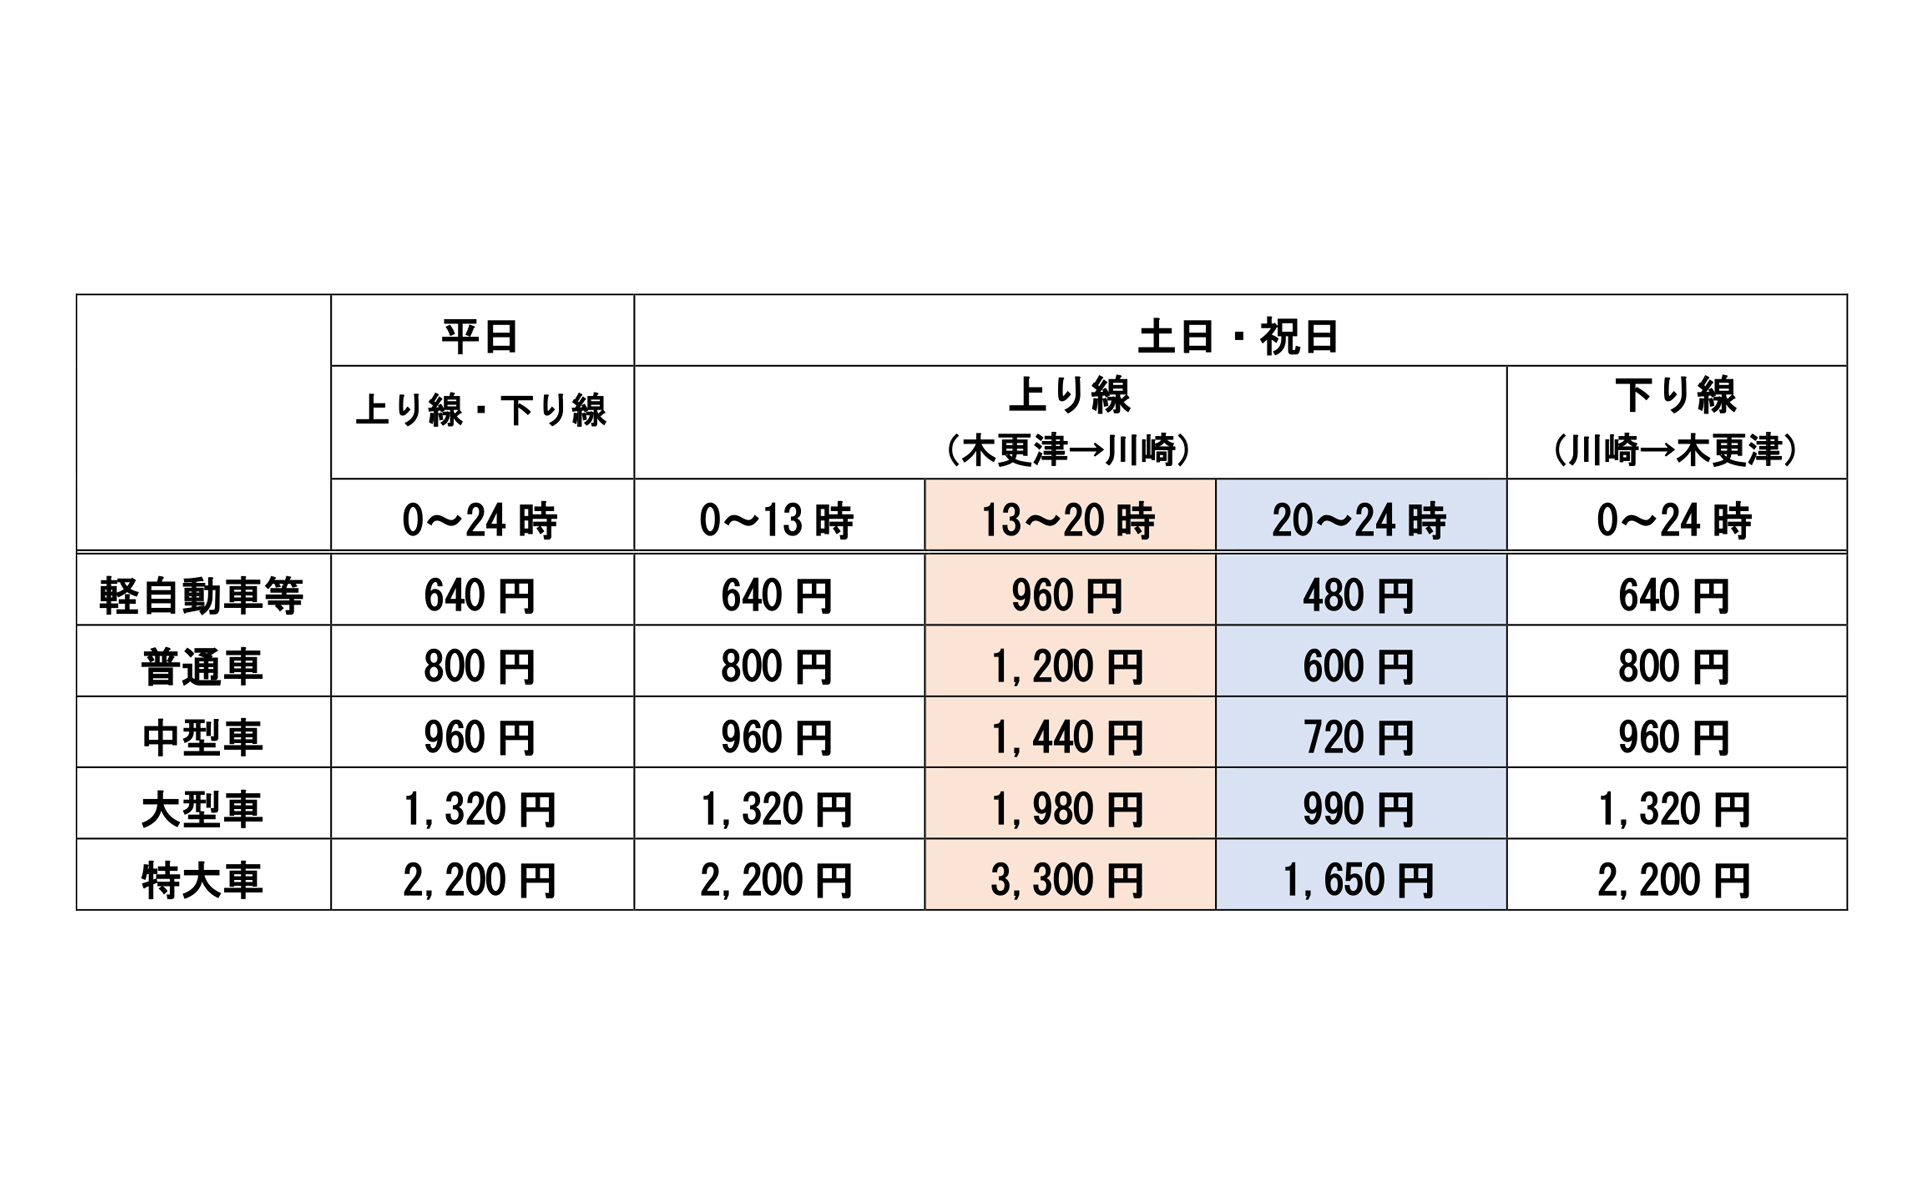 木更津から川崎に向かうアクアライン上り線で7月22日からETC時間帯別